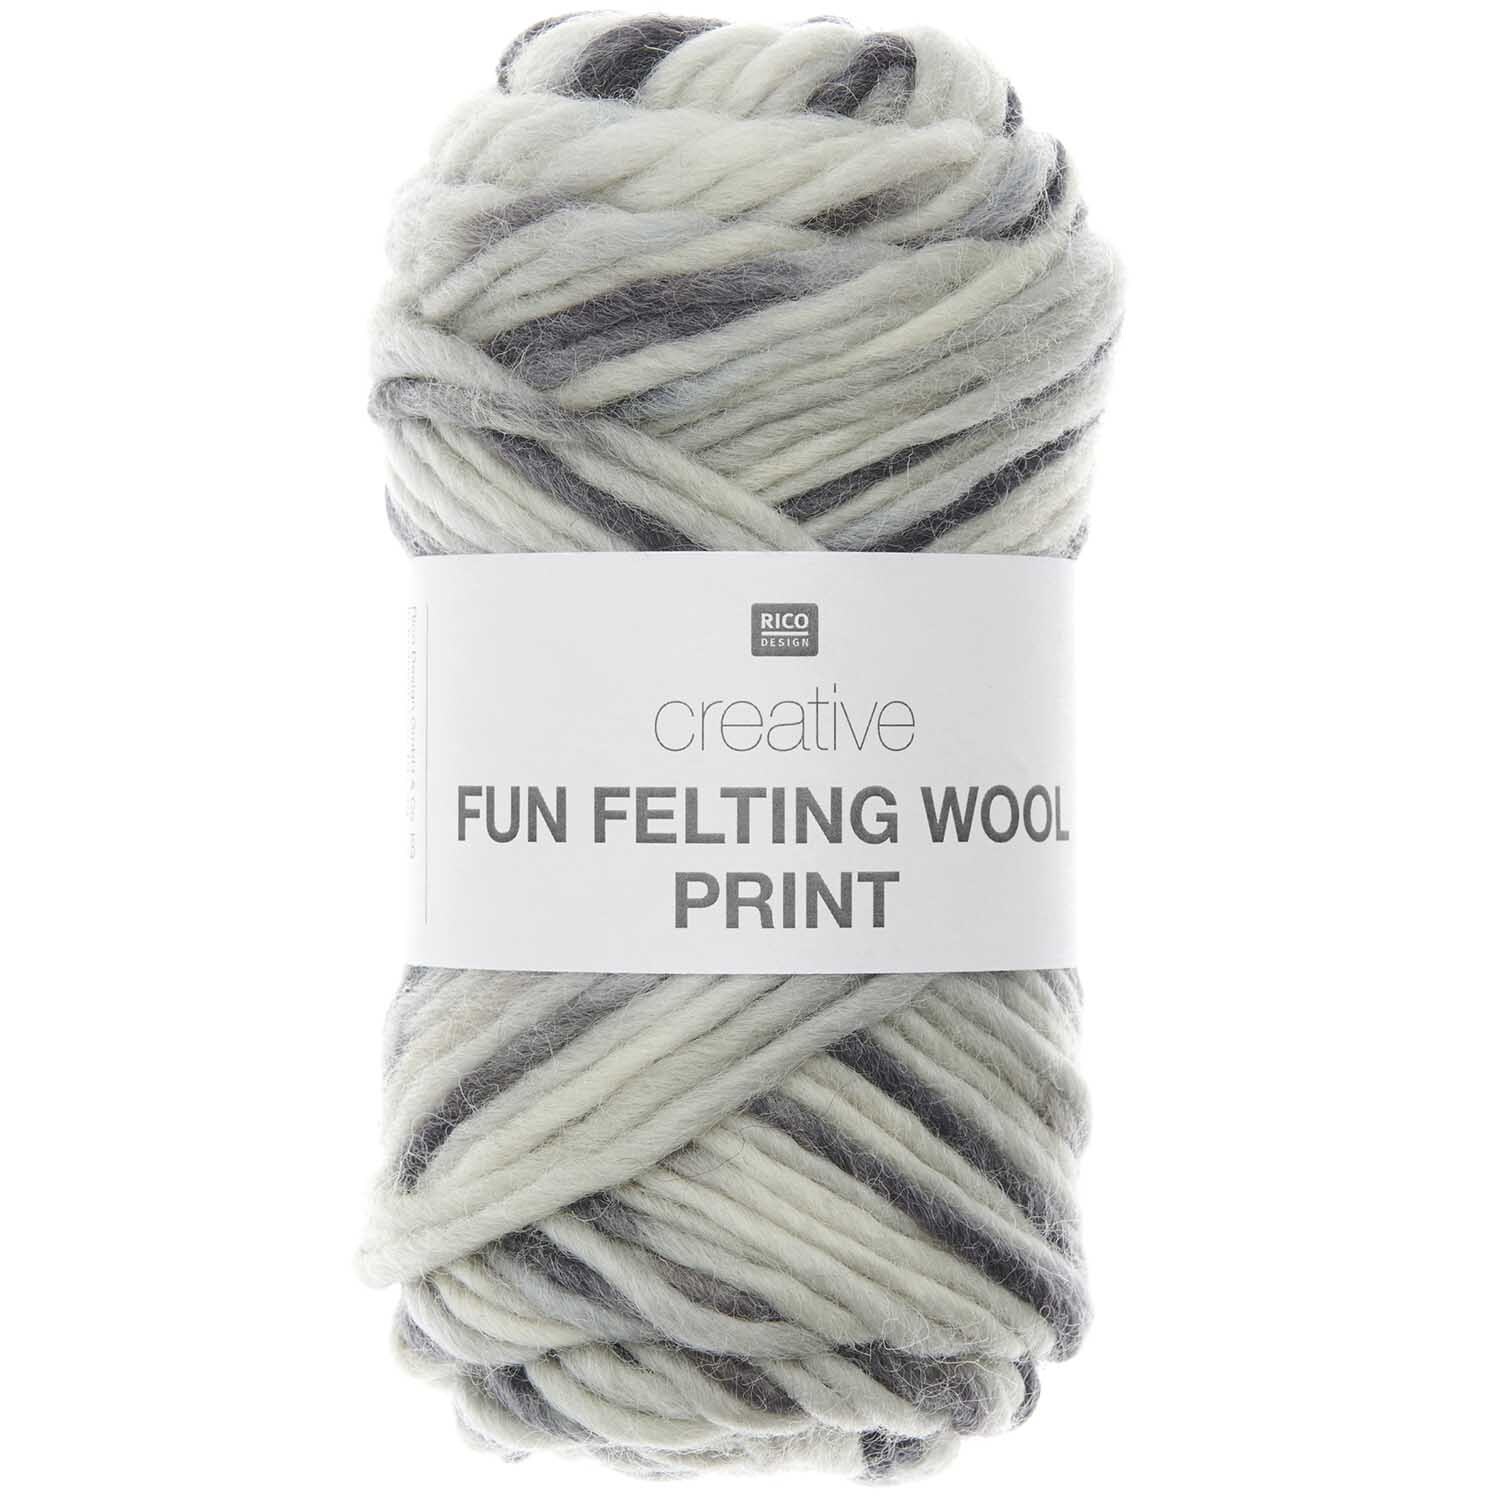 Creative Fun Felting Wool Print